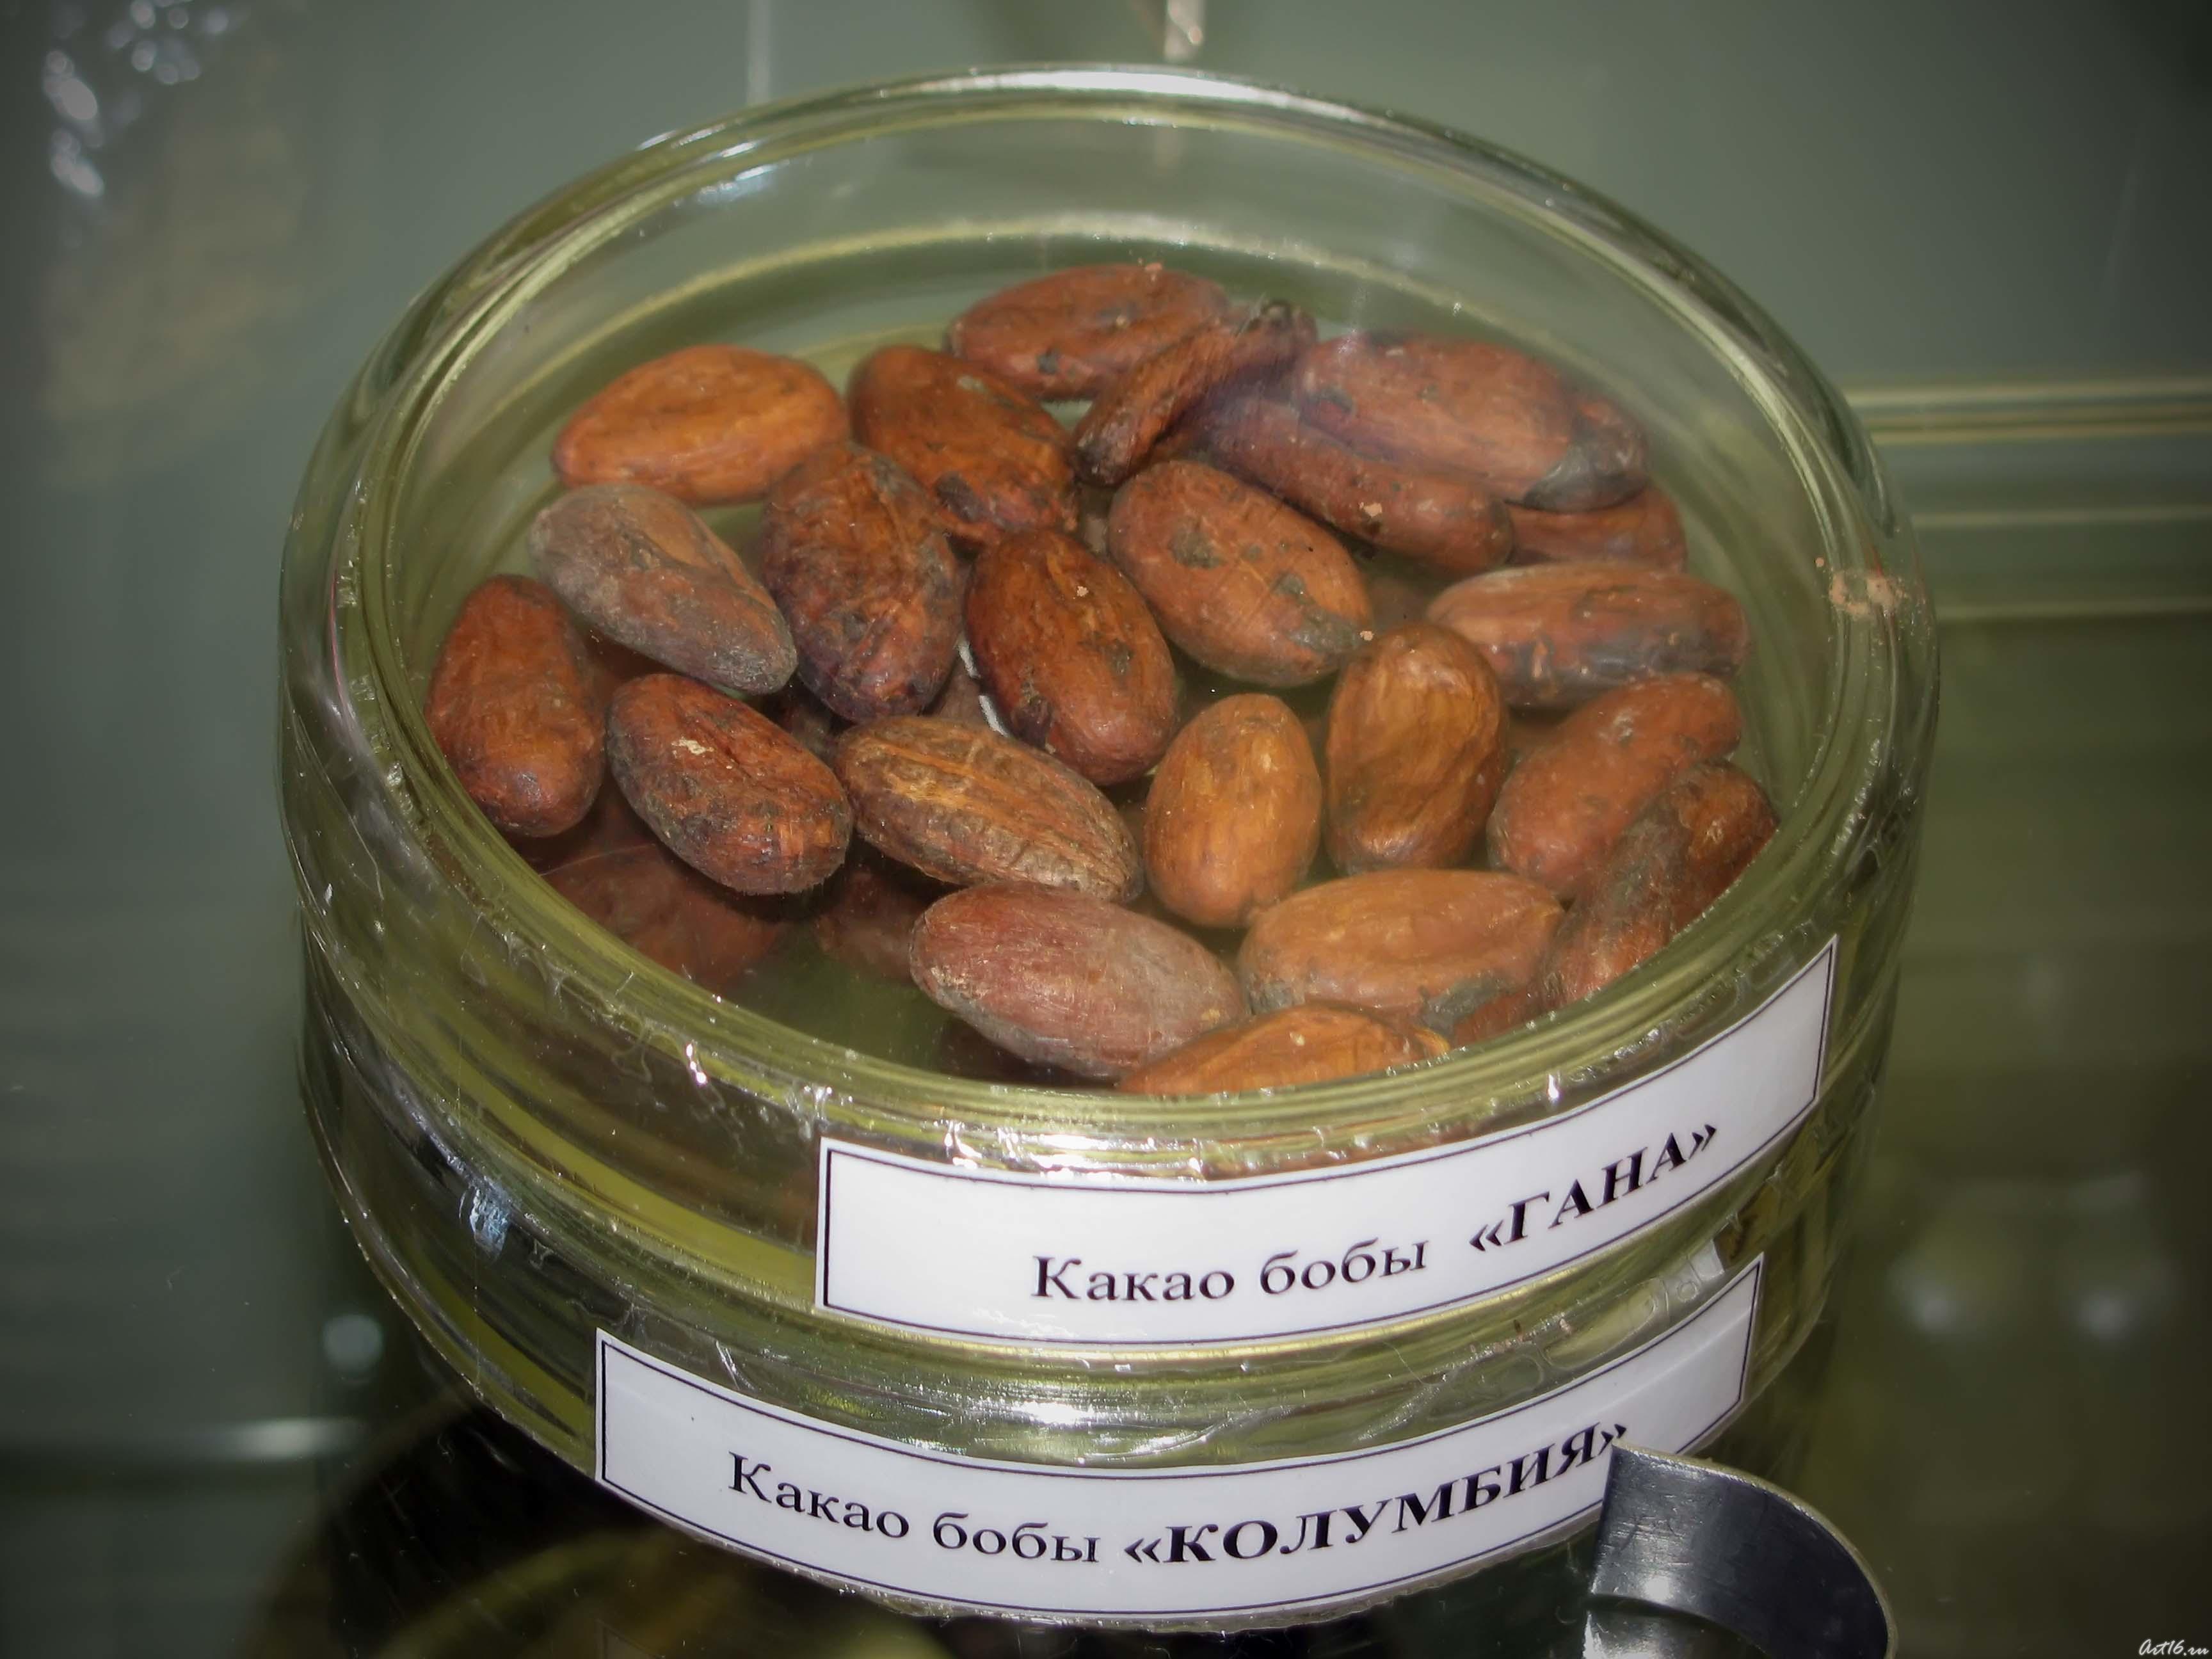 Какао бобы «Гана», какао бобы «Колумбия»::«Шоколадное Рождество»